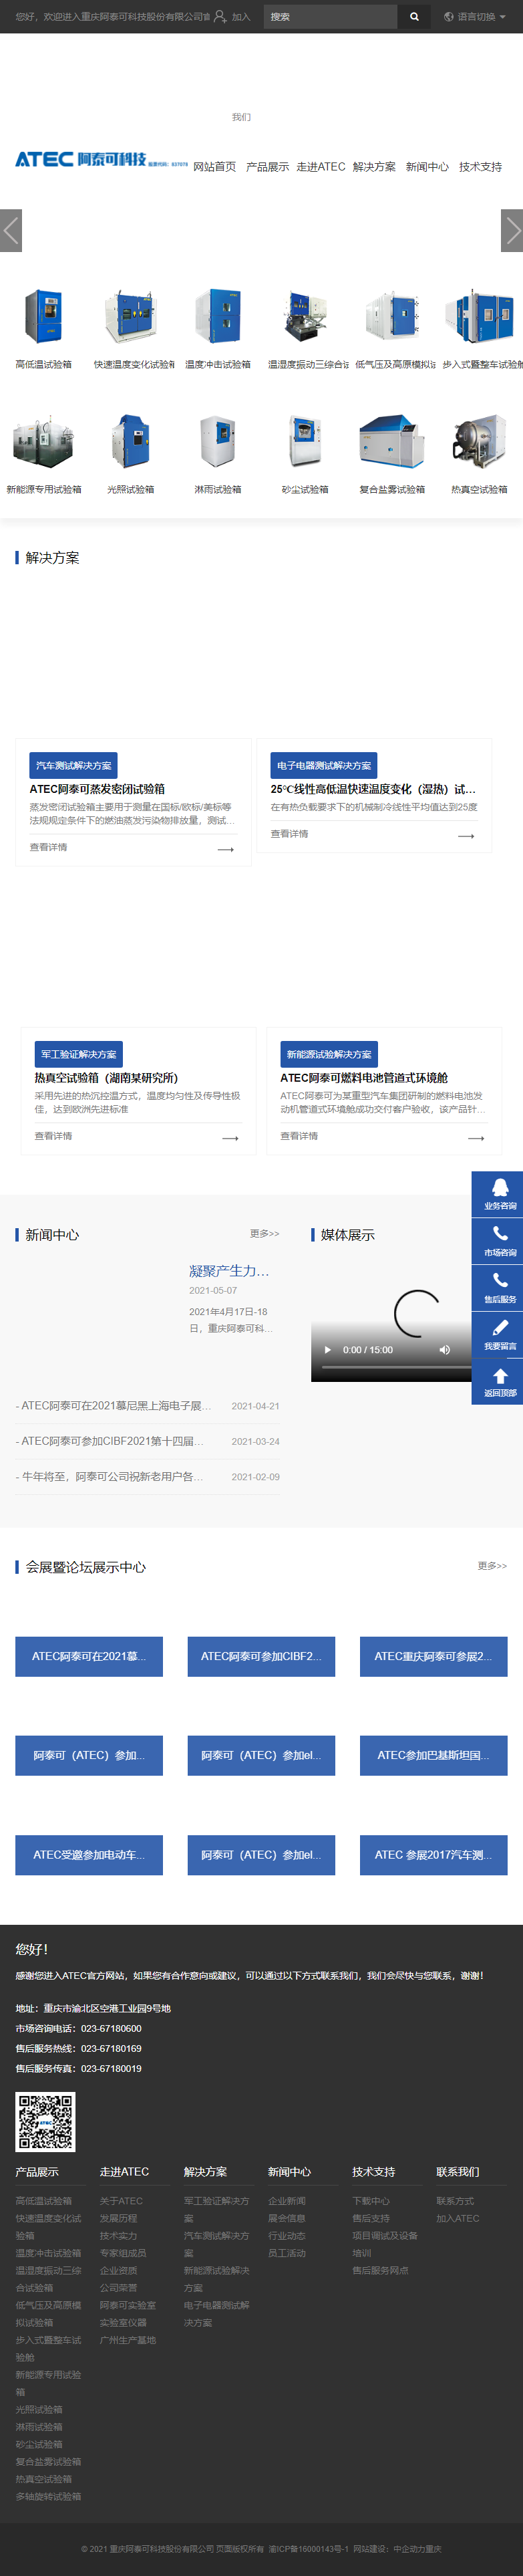 重庆阿泰可科技股份有限公司网站案例